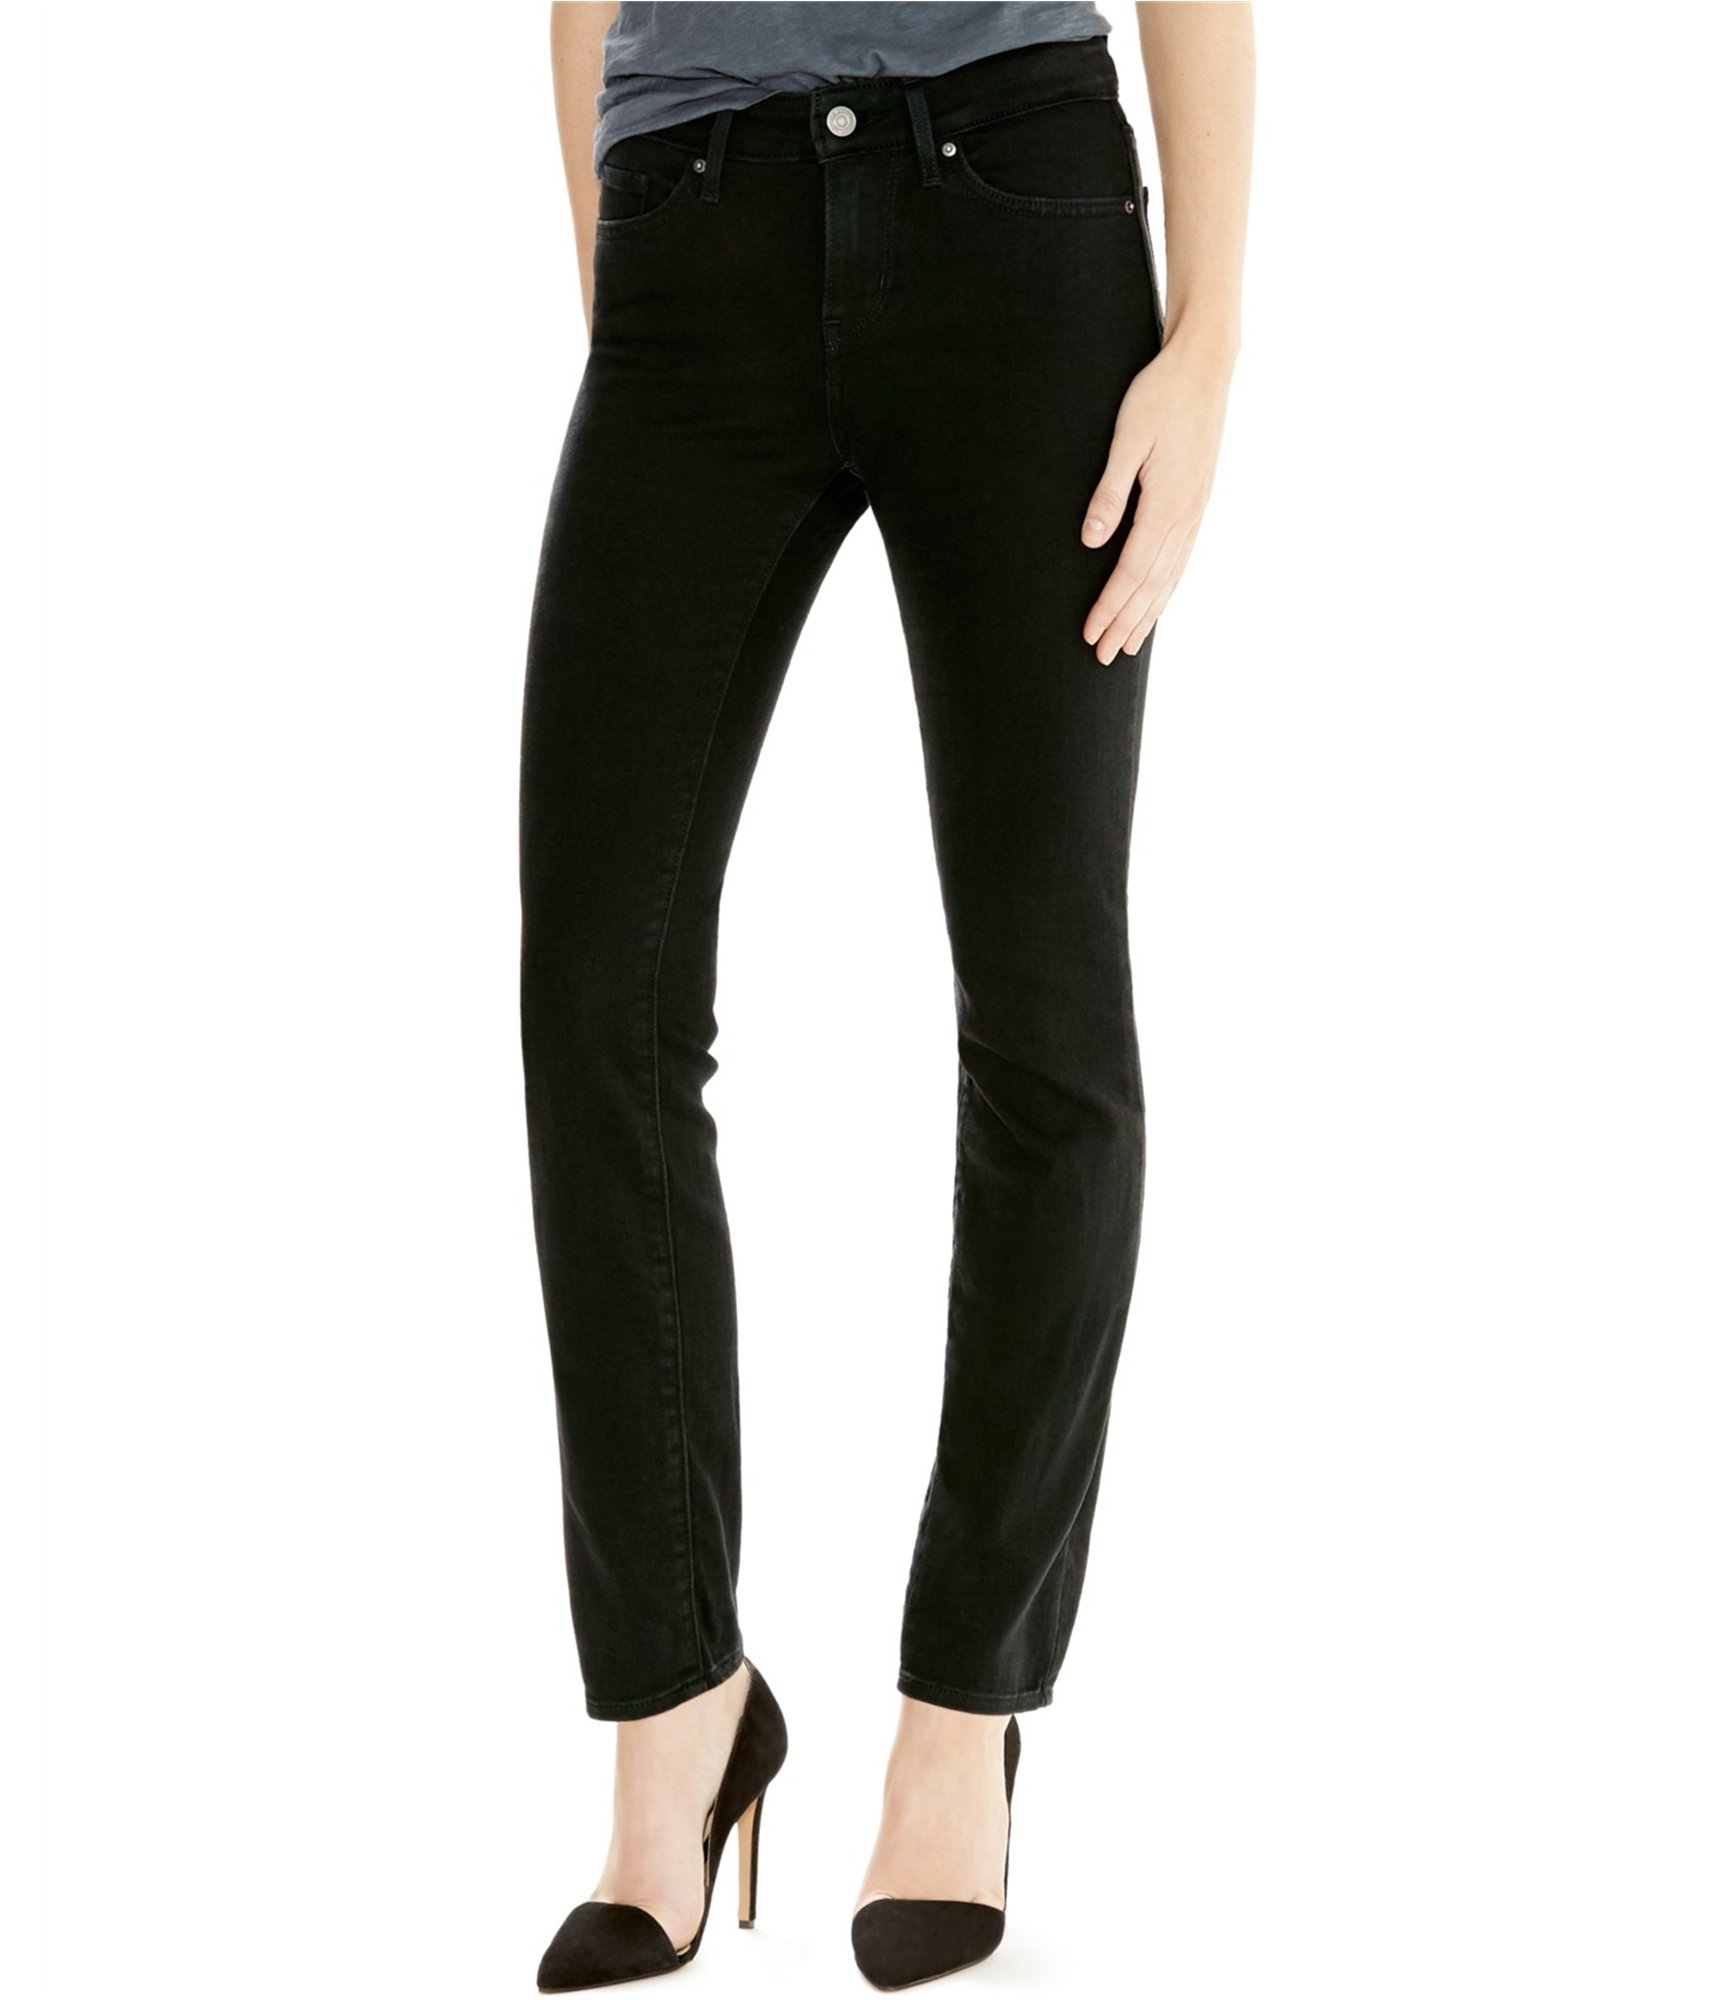 Hoofdkwartier Visa Graan Buy a Womens Levi's 712 Slim Fit Jeans Online | TagsWeekly.com, TW1